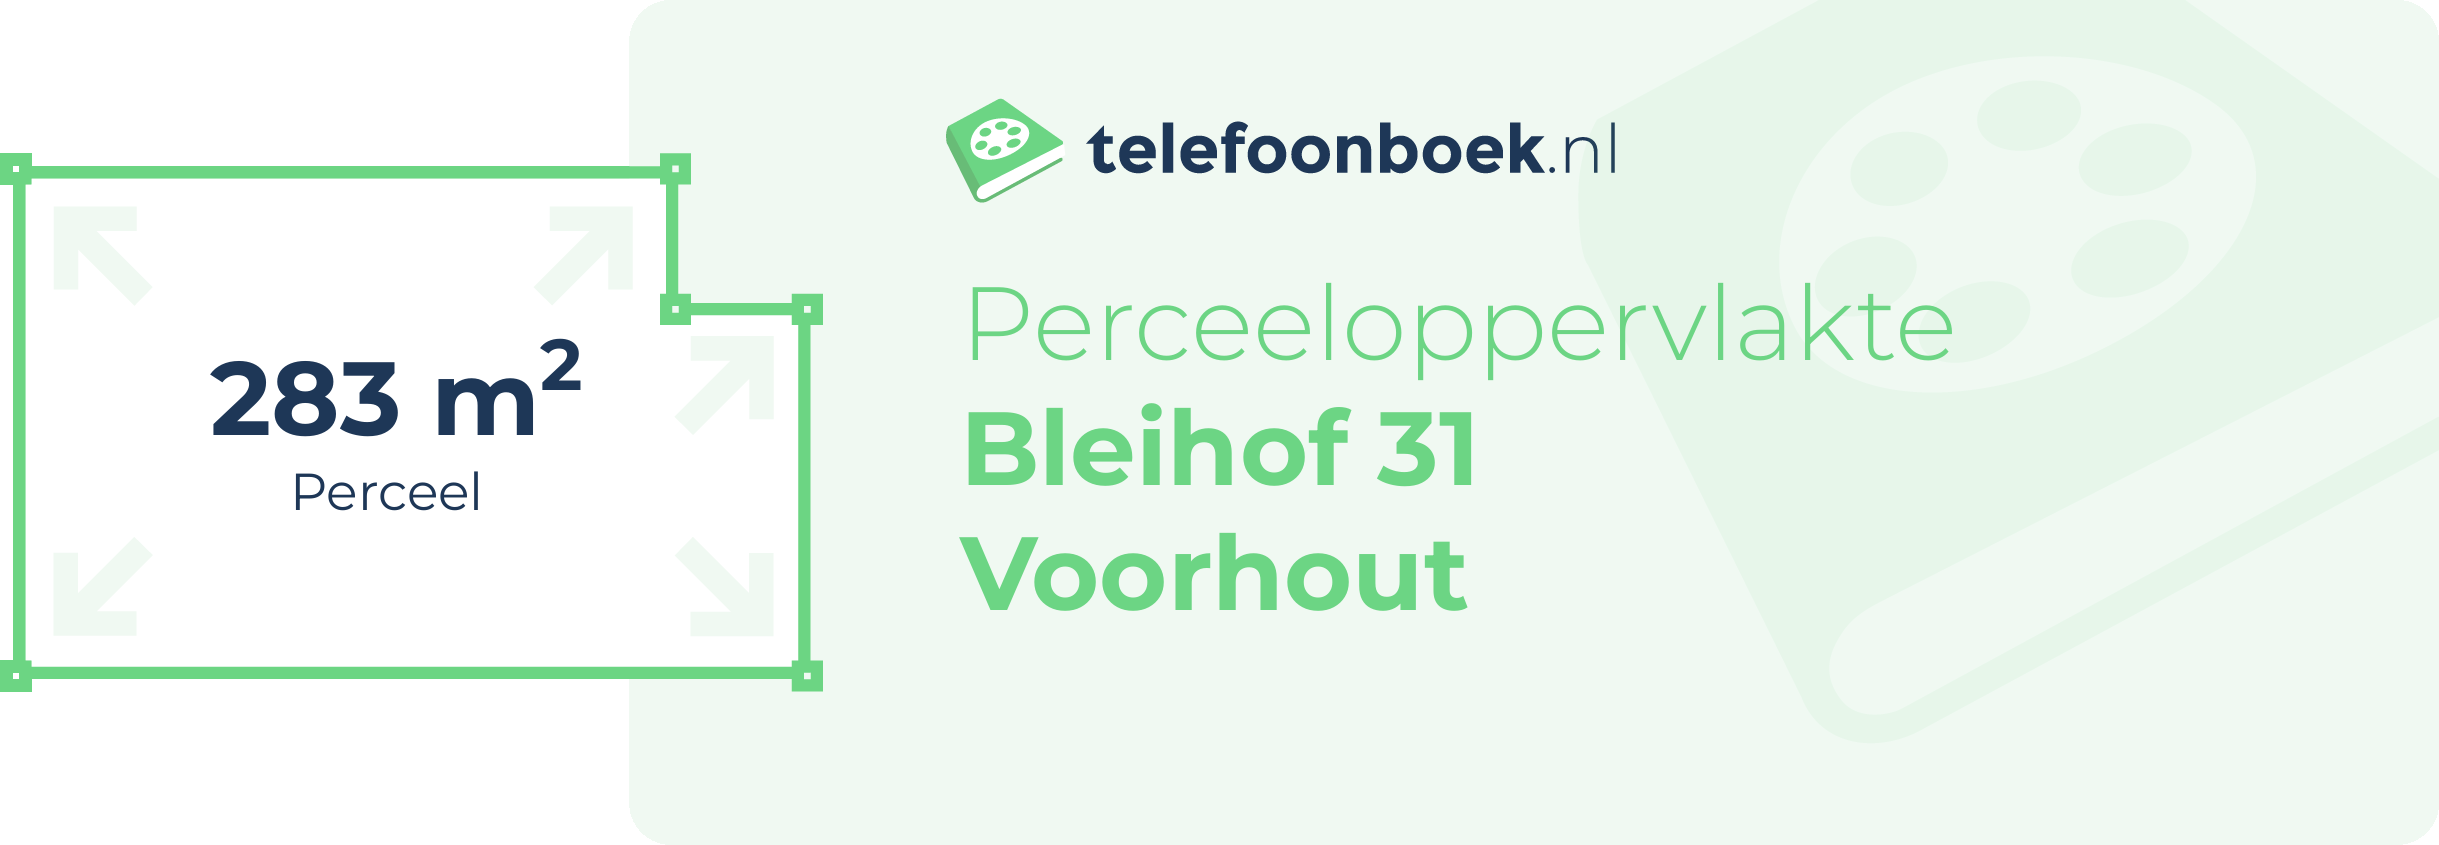 Perceeloppervlakte Bleihof 31 Voorhout